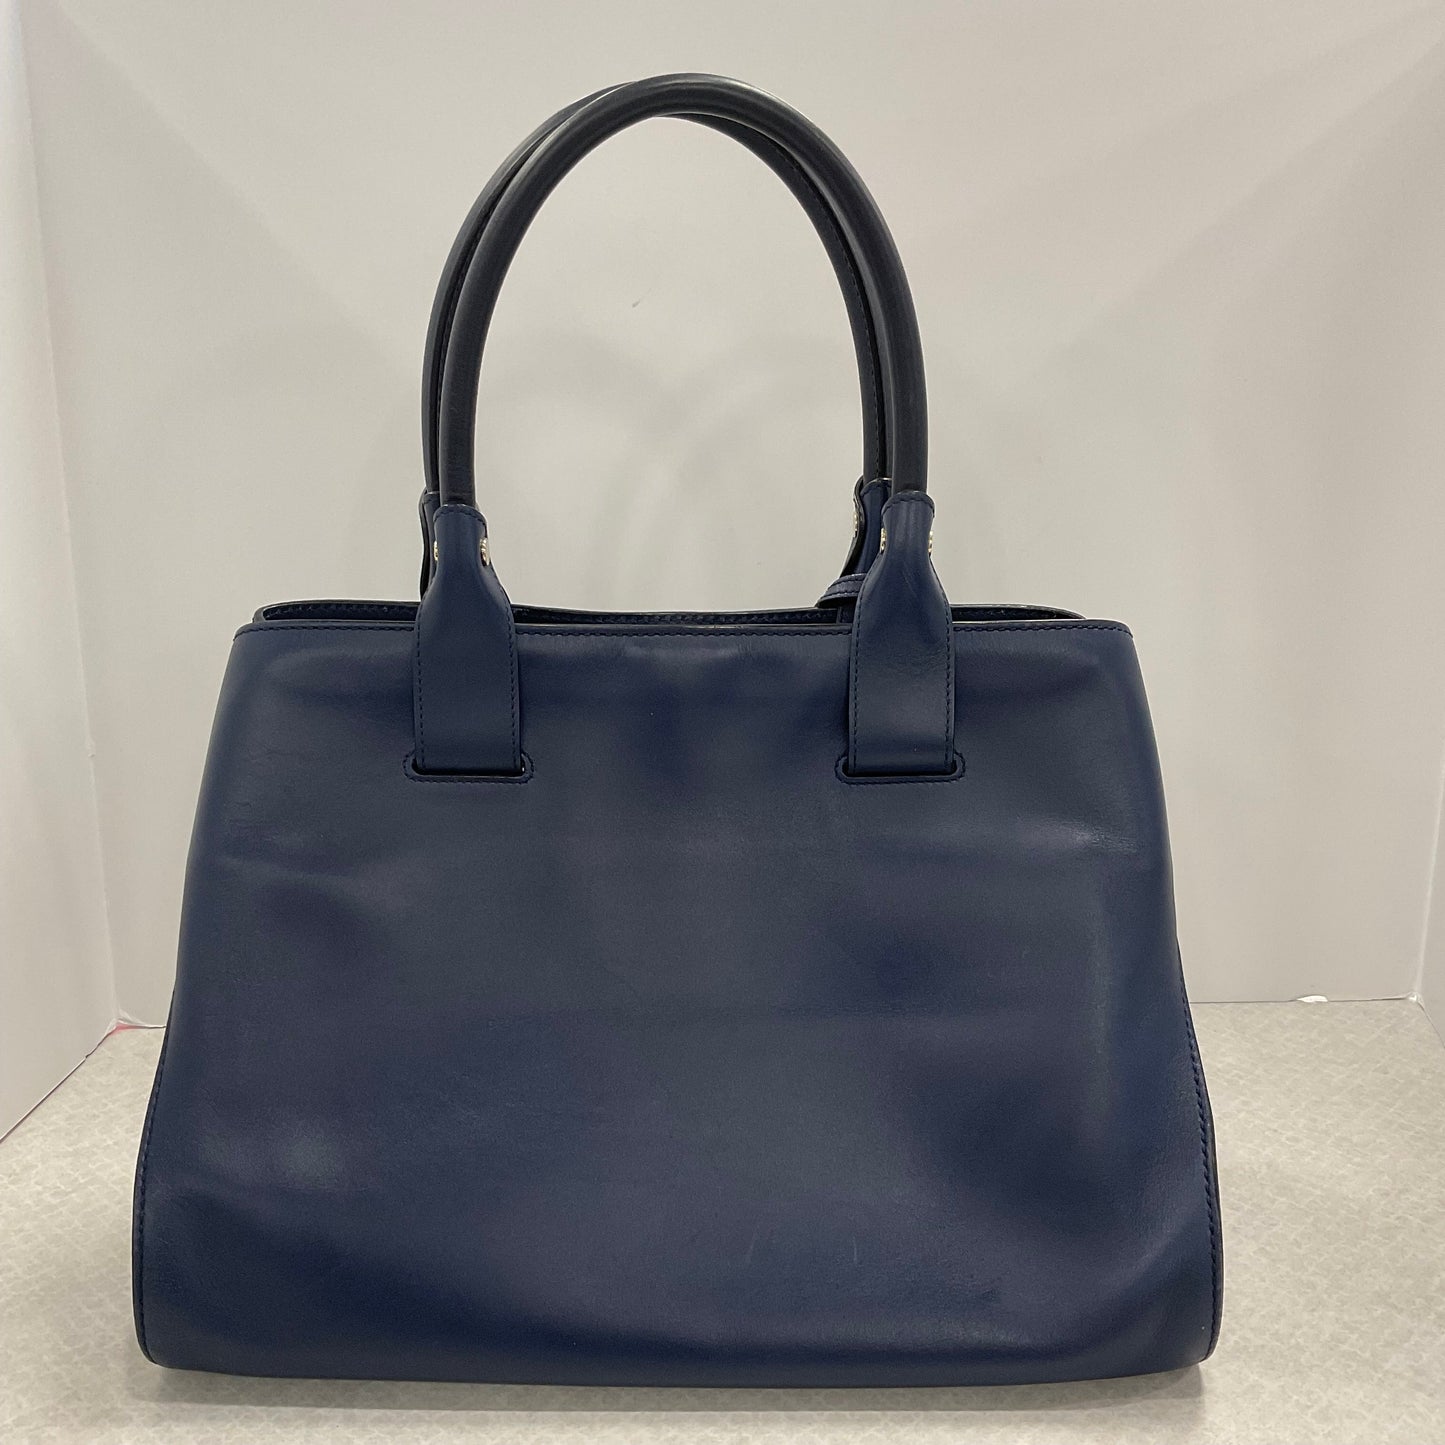 Handbag Designer By Tods  Size: Large